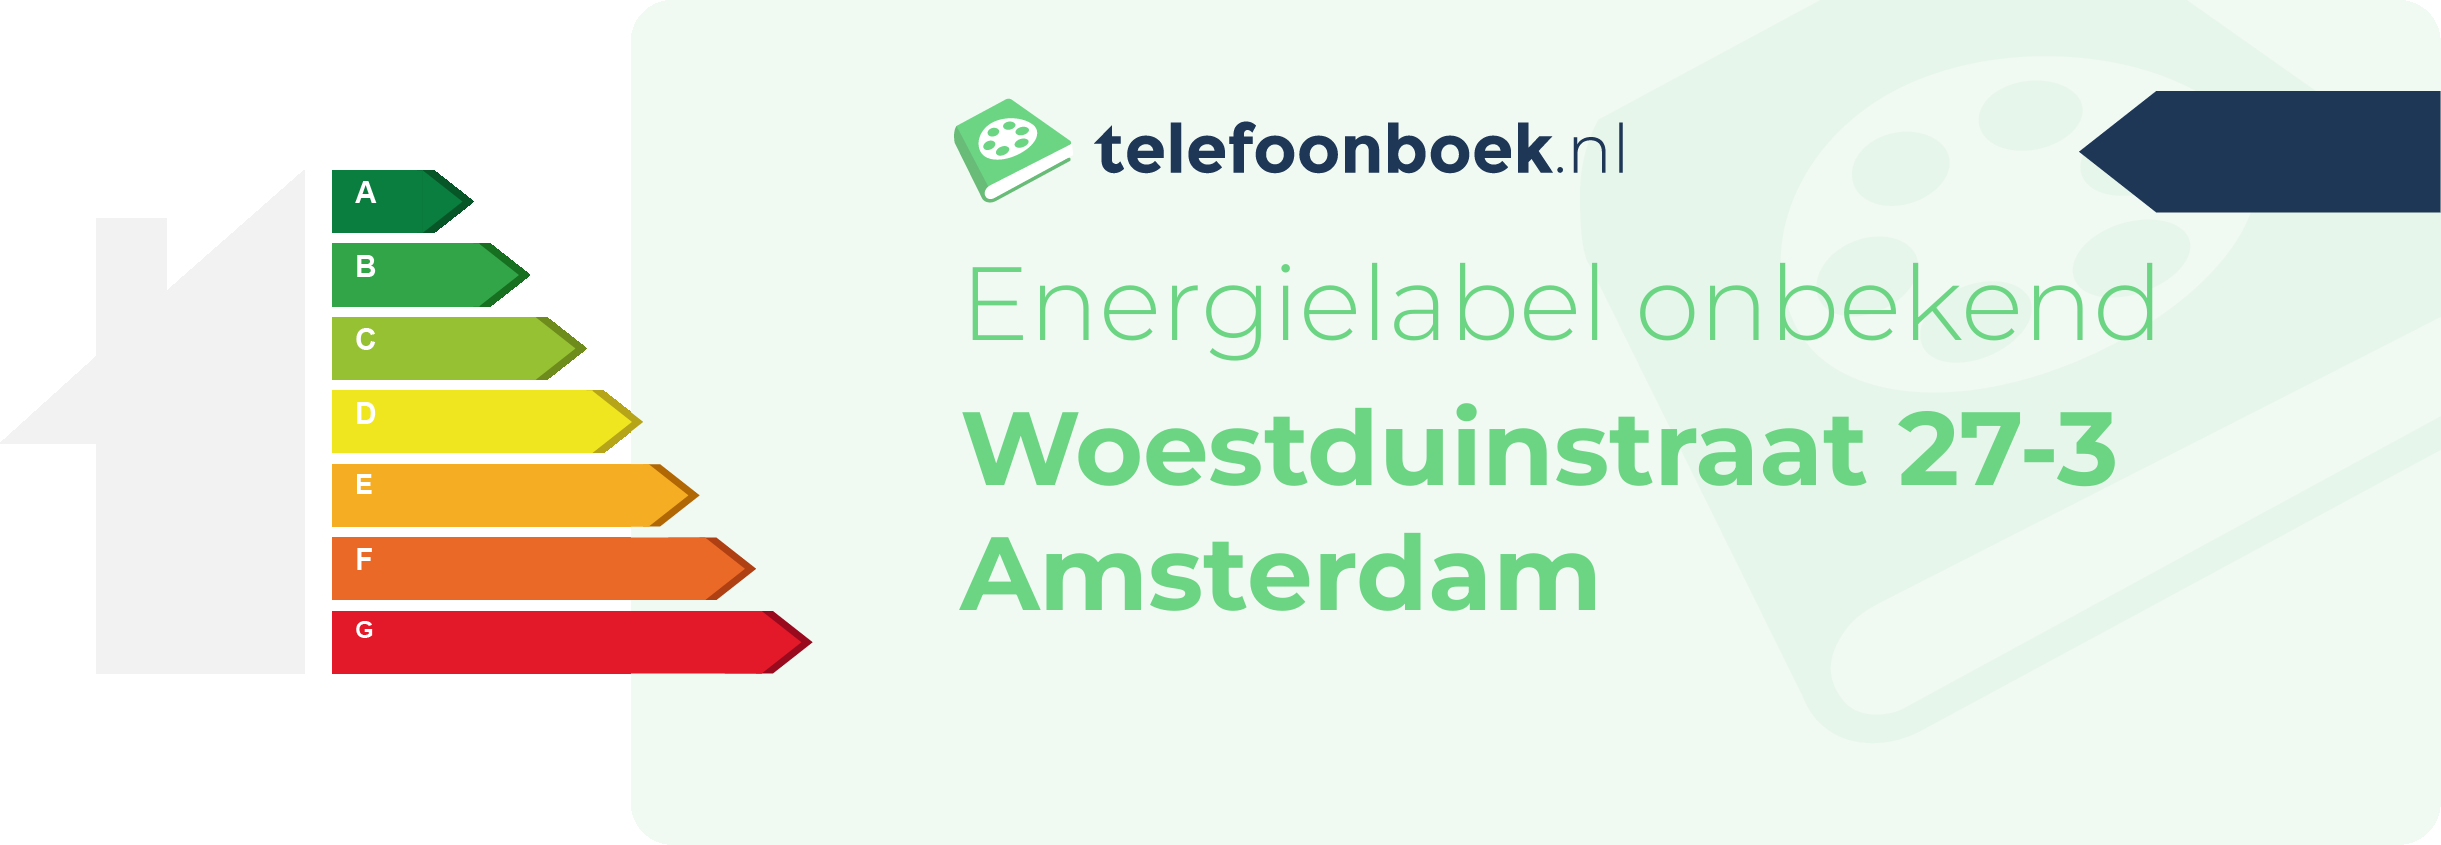 Energielabel Woestduinstraat 27-3 Amsterdam